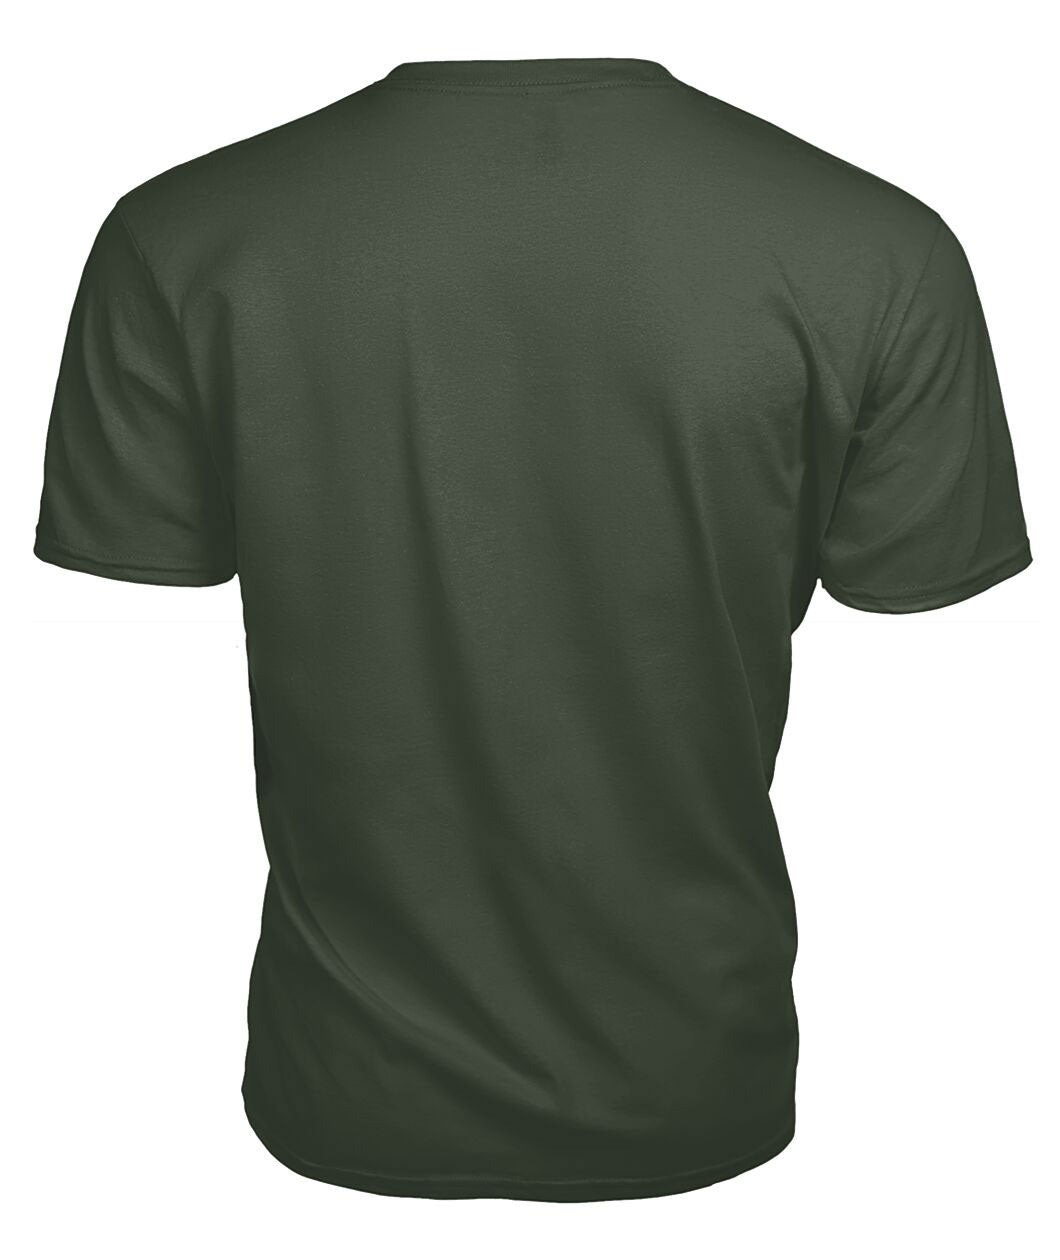 Darroch (Gourock) Tartan Crest 2D T-shirt - Blood Runs Through My Veins Style